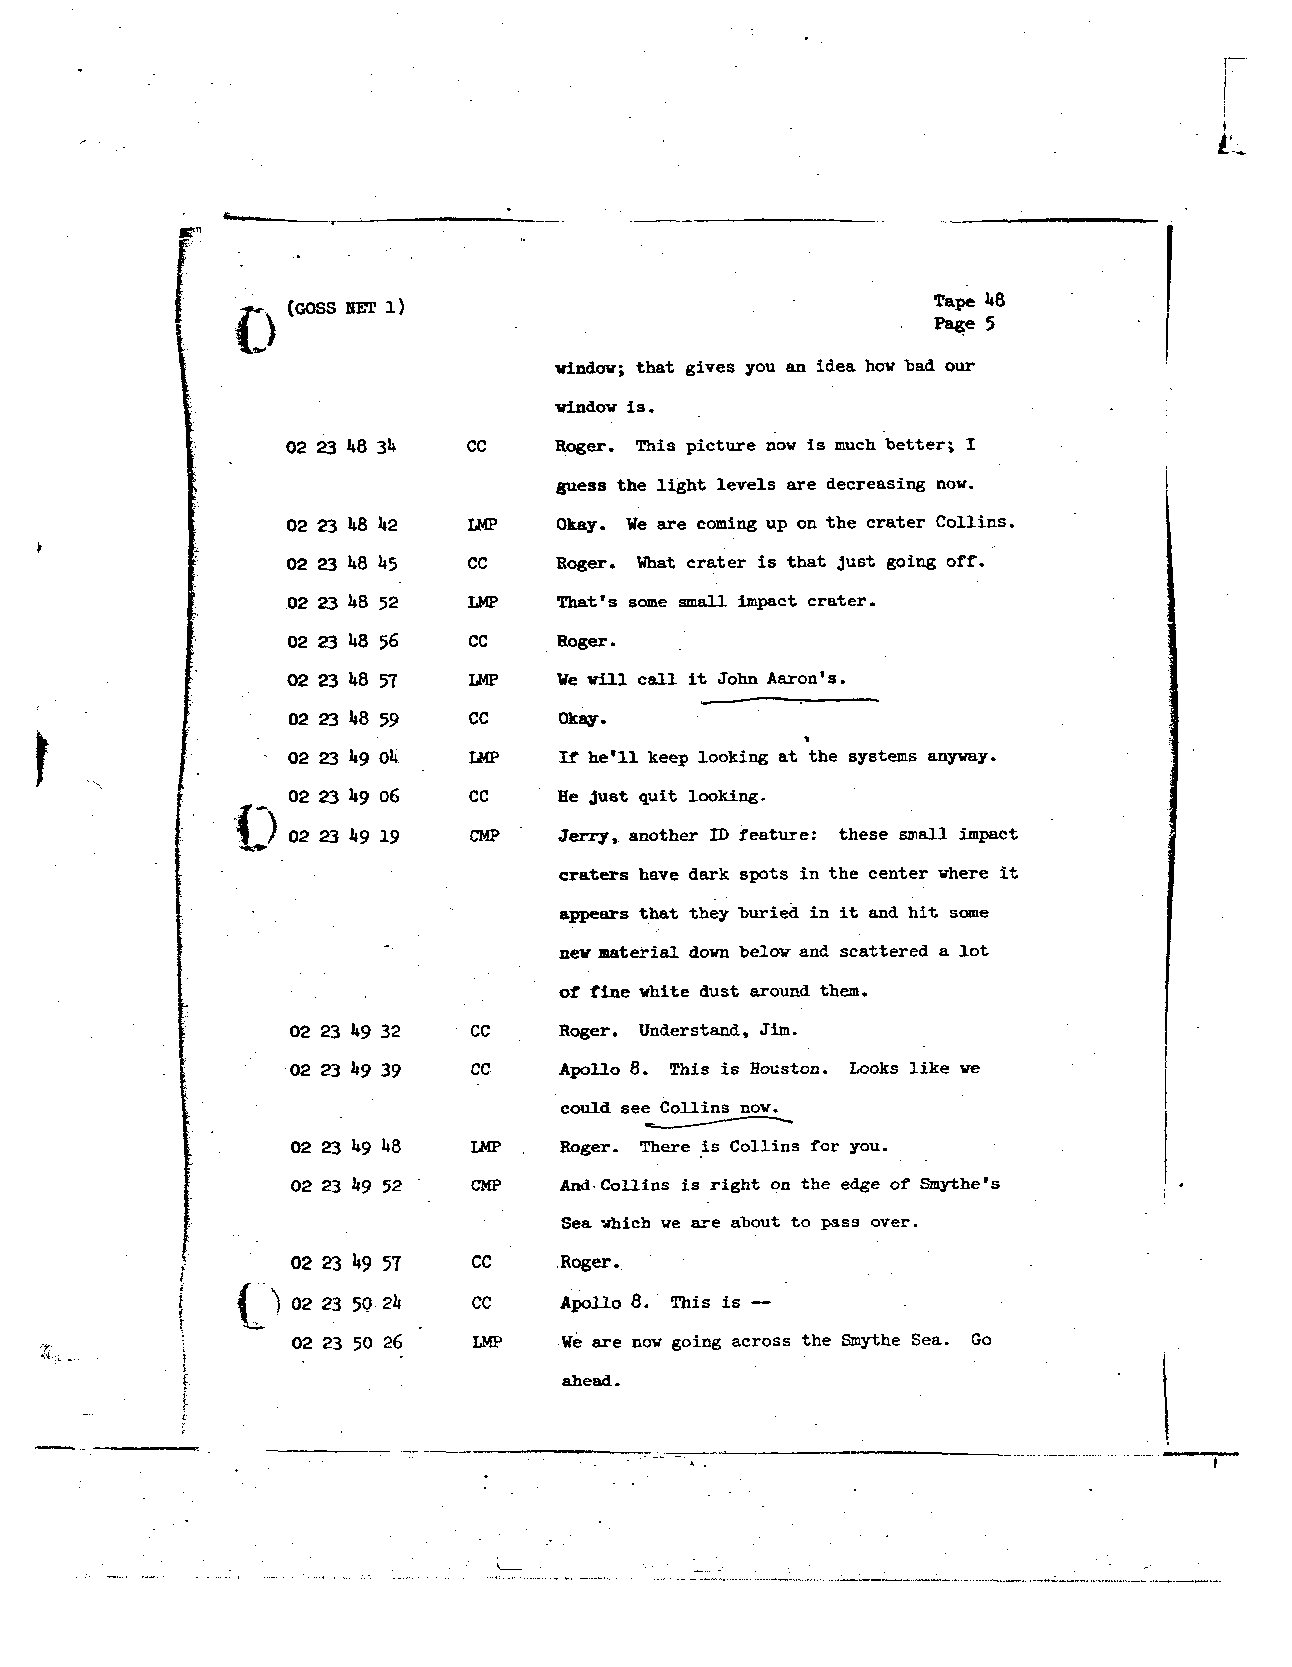 Page 377 of Apollo 8’s original transcript